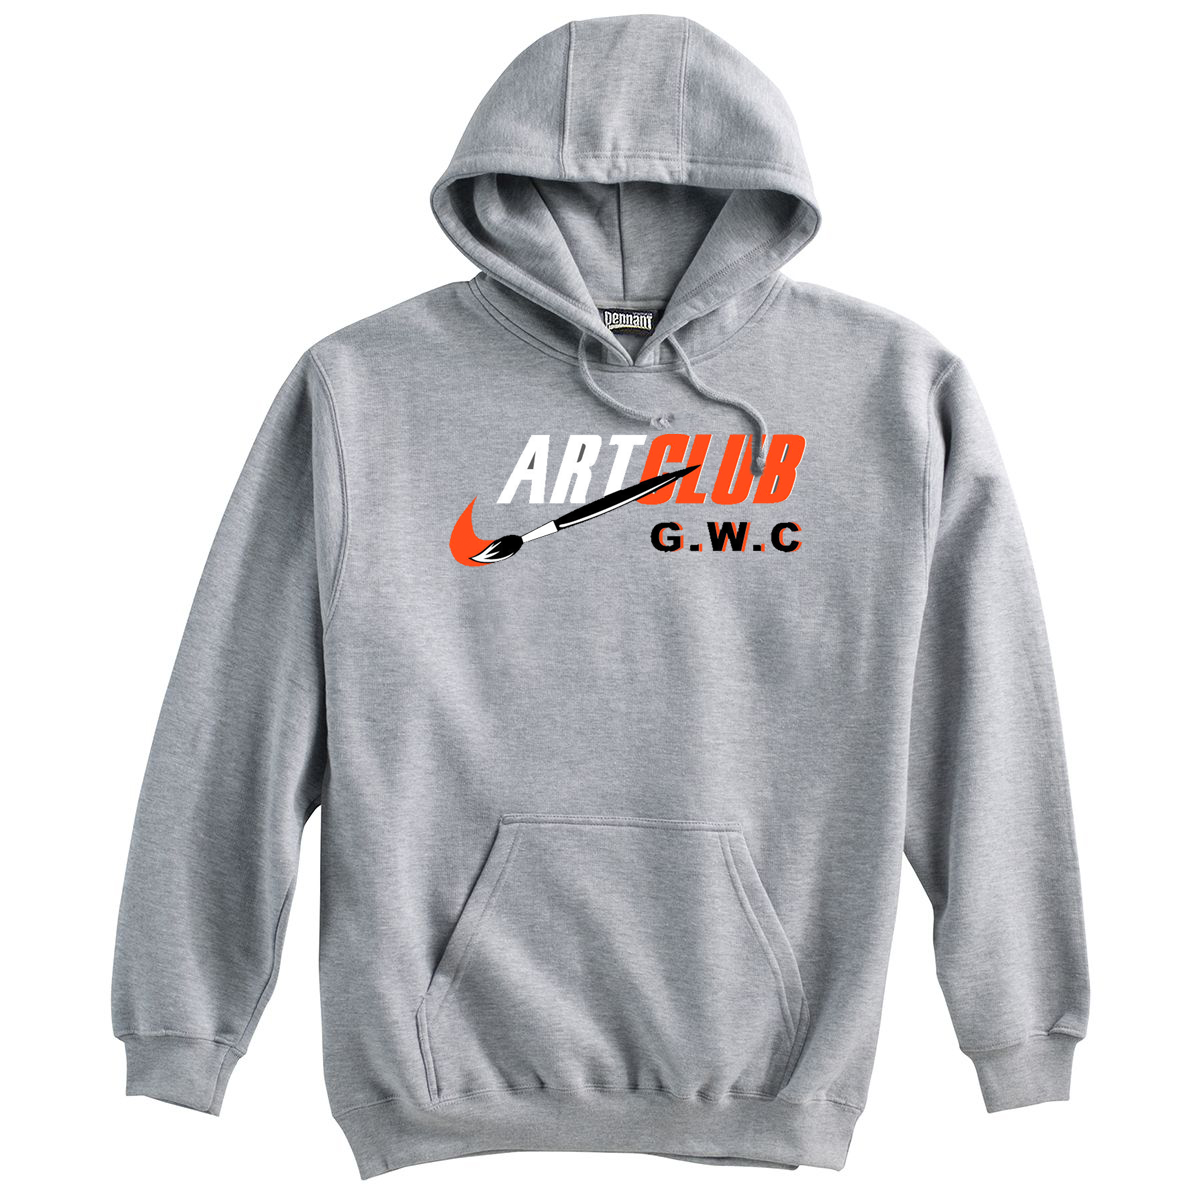 GWC Art Club Sweatshirt